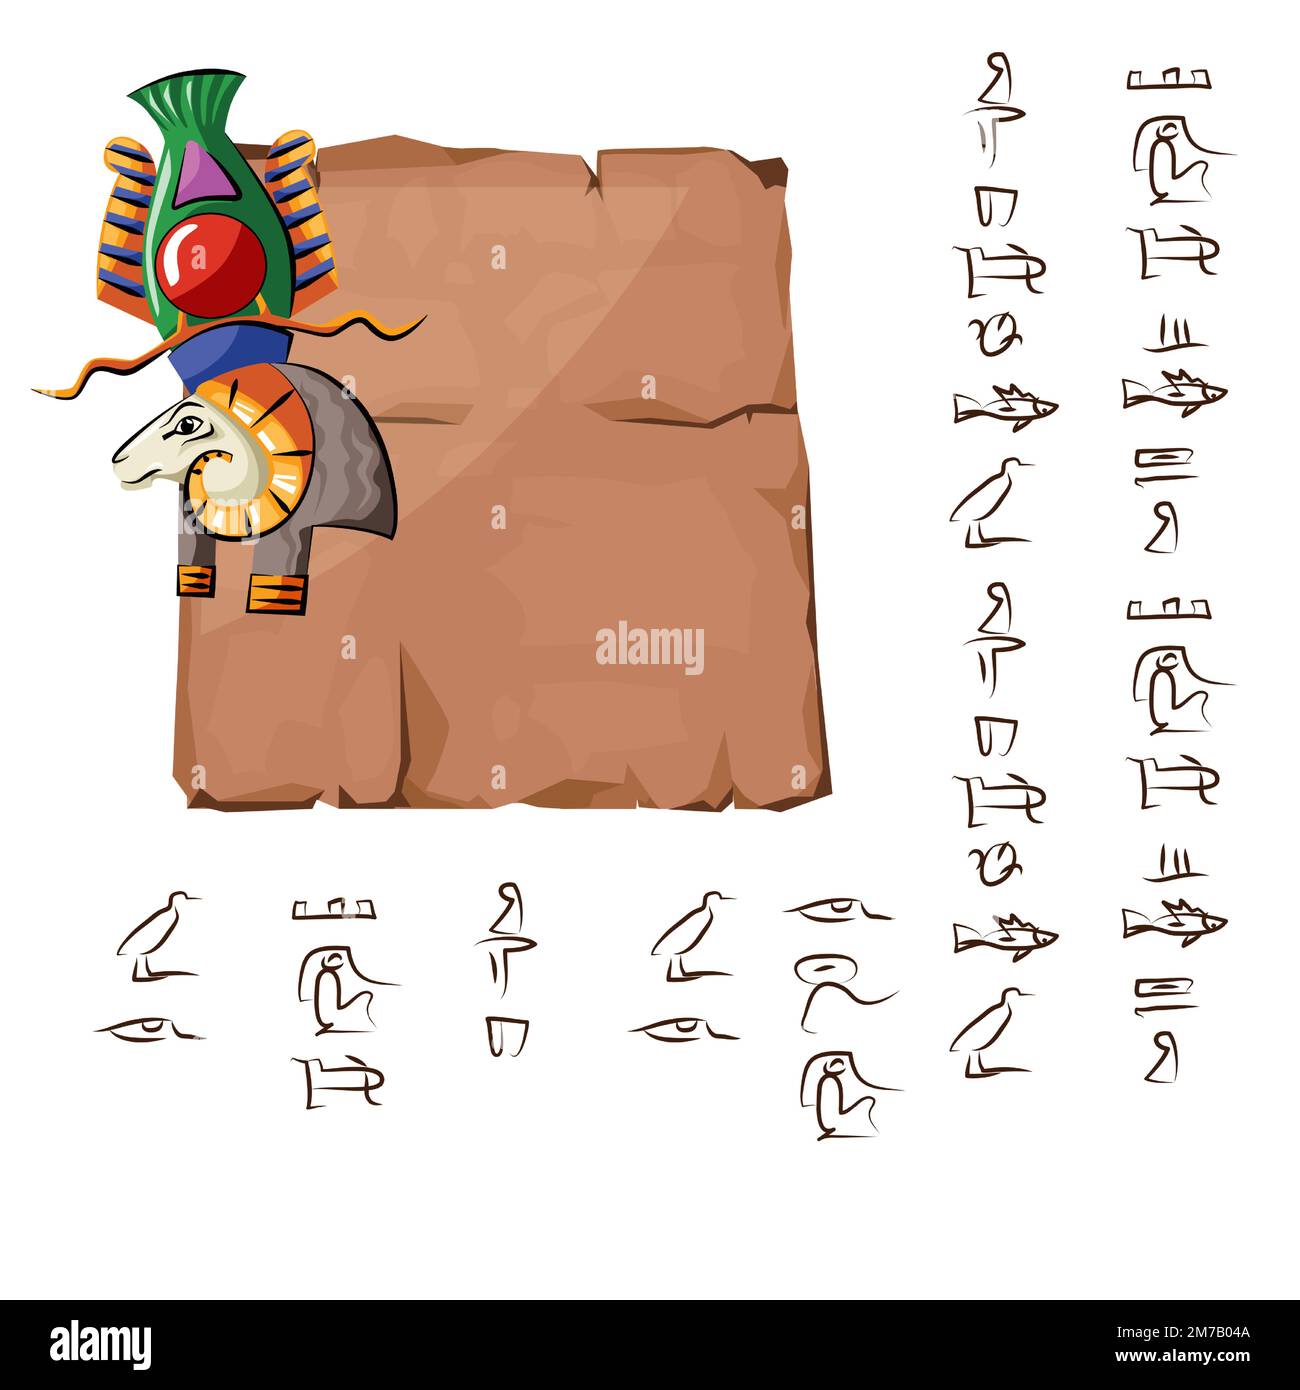 Alte ägyptische Papyrus- oder Steinsäule mit Rammbock-Karikatur-Vektordarstellung. Altes Papier mit Hieroglyphen zur Speicherung von Informationen, ägyptisches Kultursymbol, isoliert auf weißem Hintergrund Stock Vektor